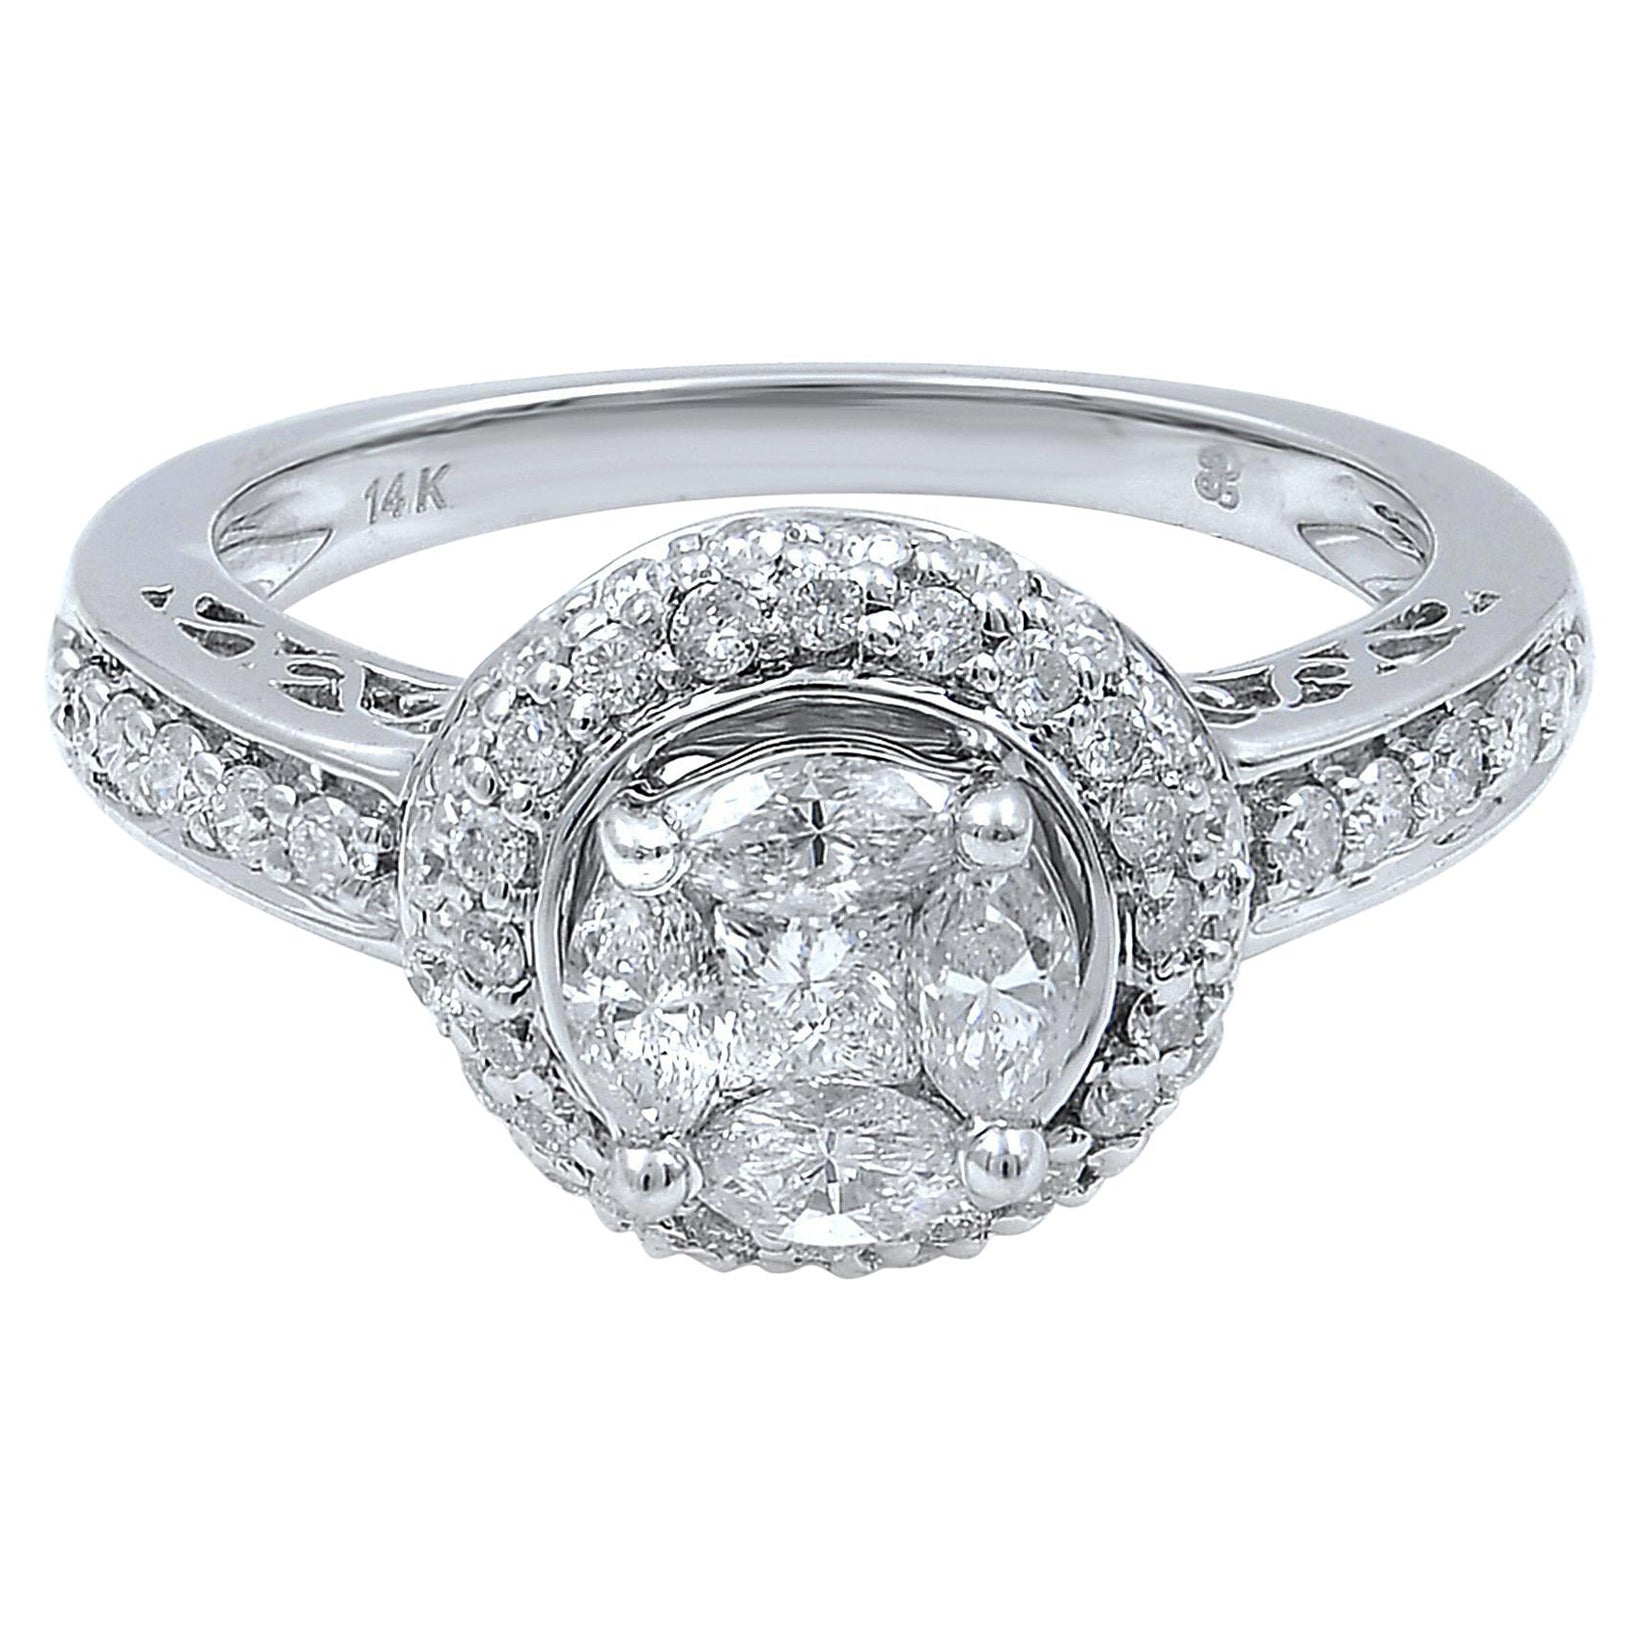 Rachel Koen Diamond Halo Engagement Ring 14K White Gold 1.13cttw